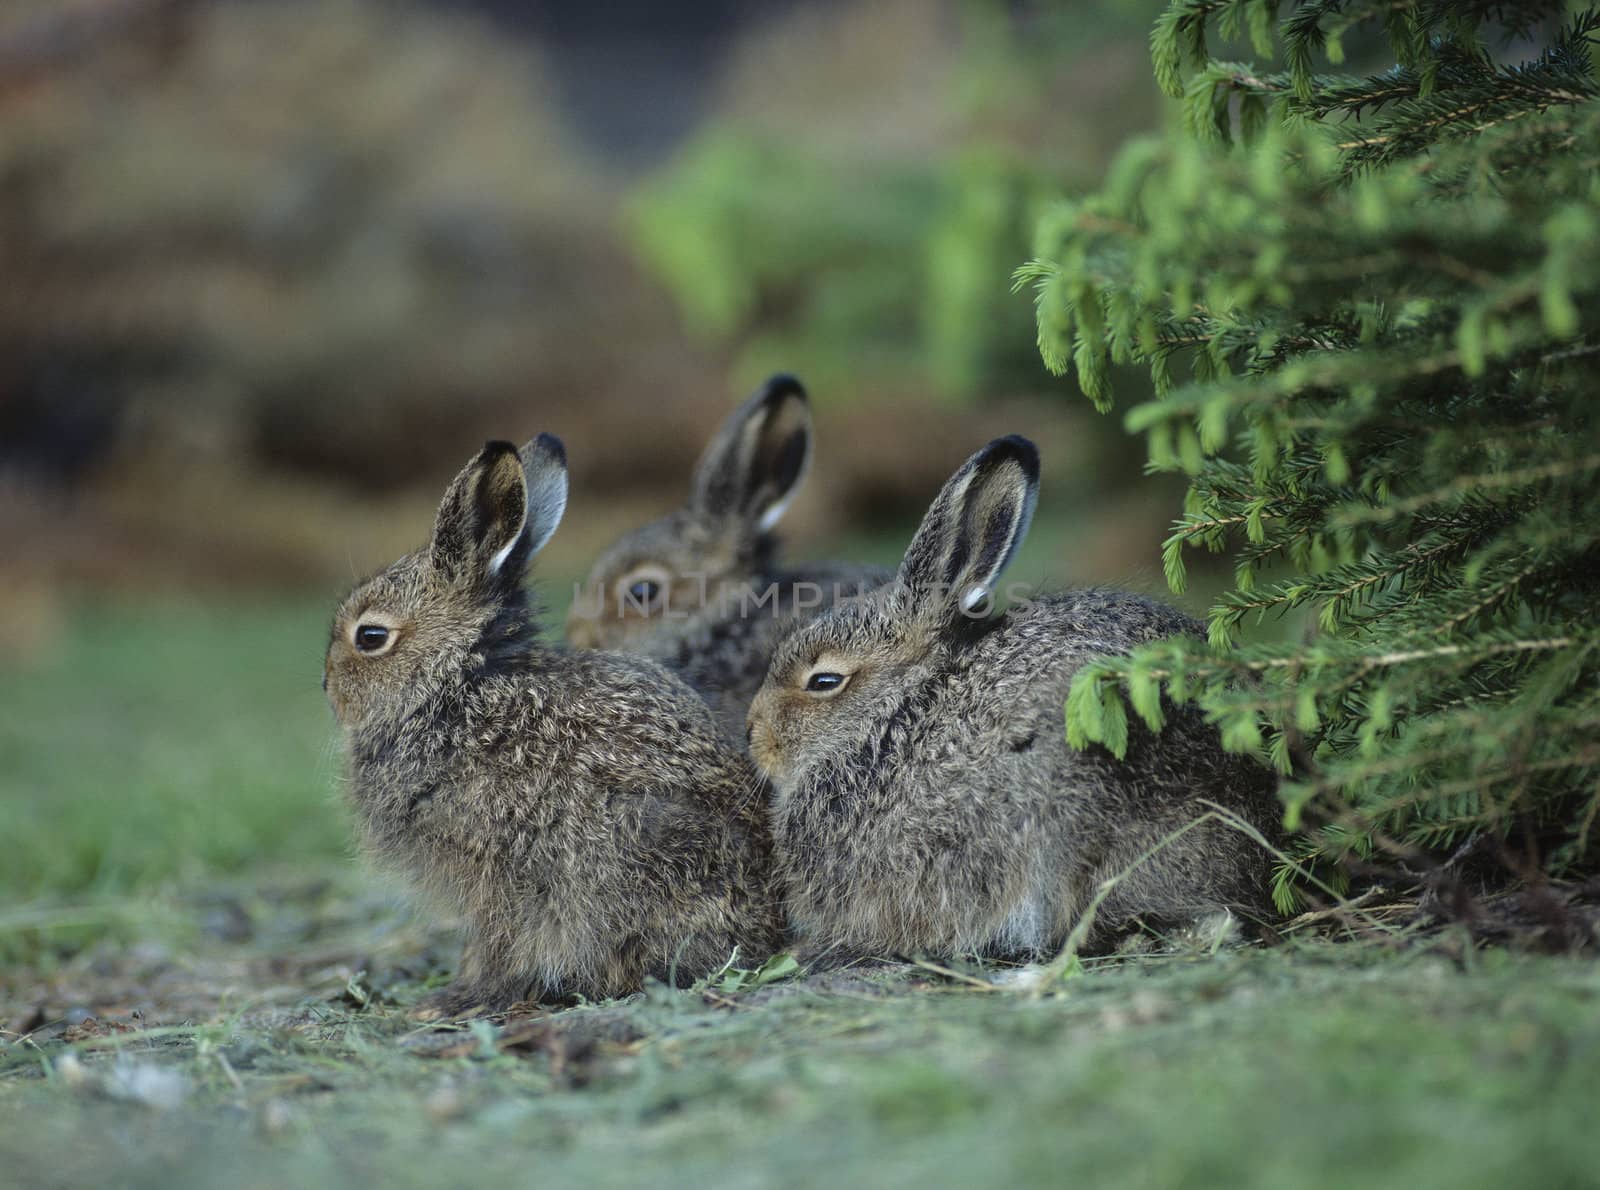 Three Rabbits Sitting by Bush by moodboard